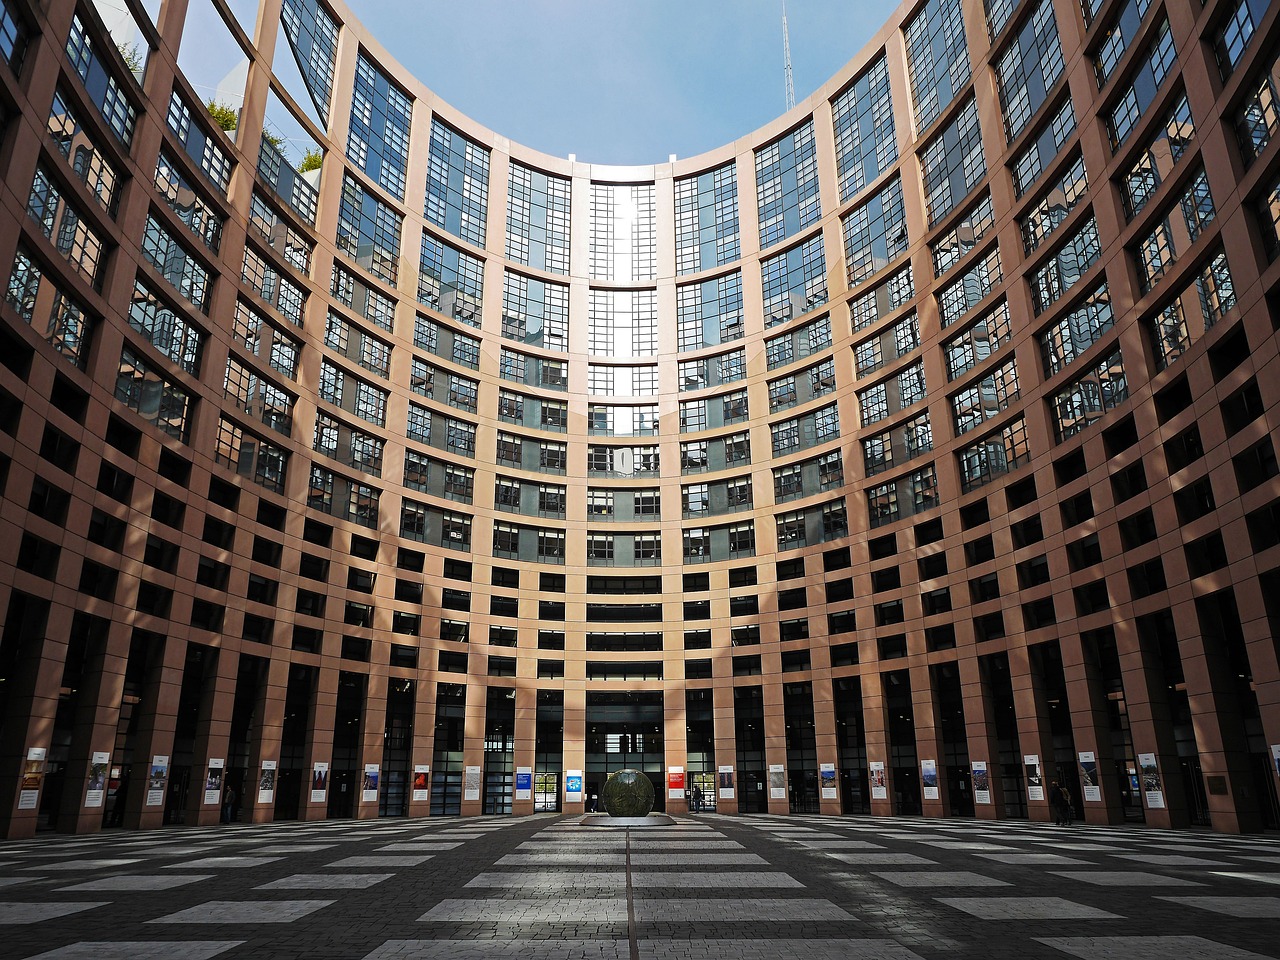 Zákonodárci EU ukládají přísné požadavky na banky držící digitální aktiva